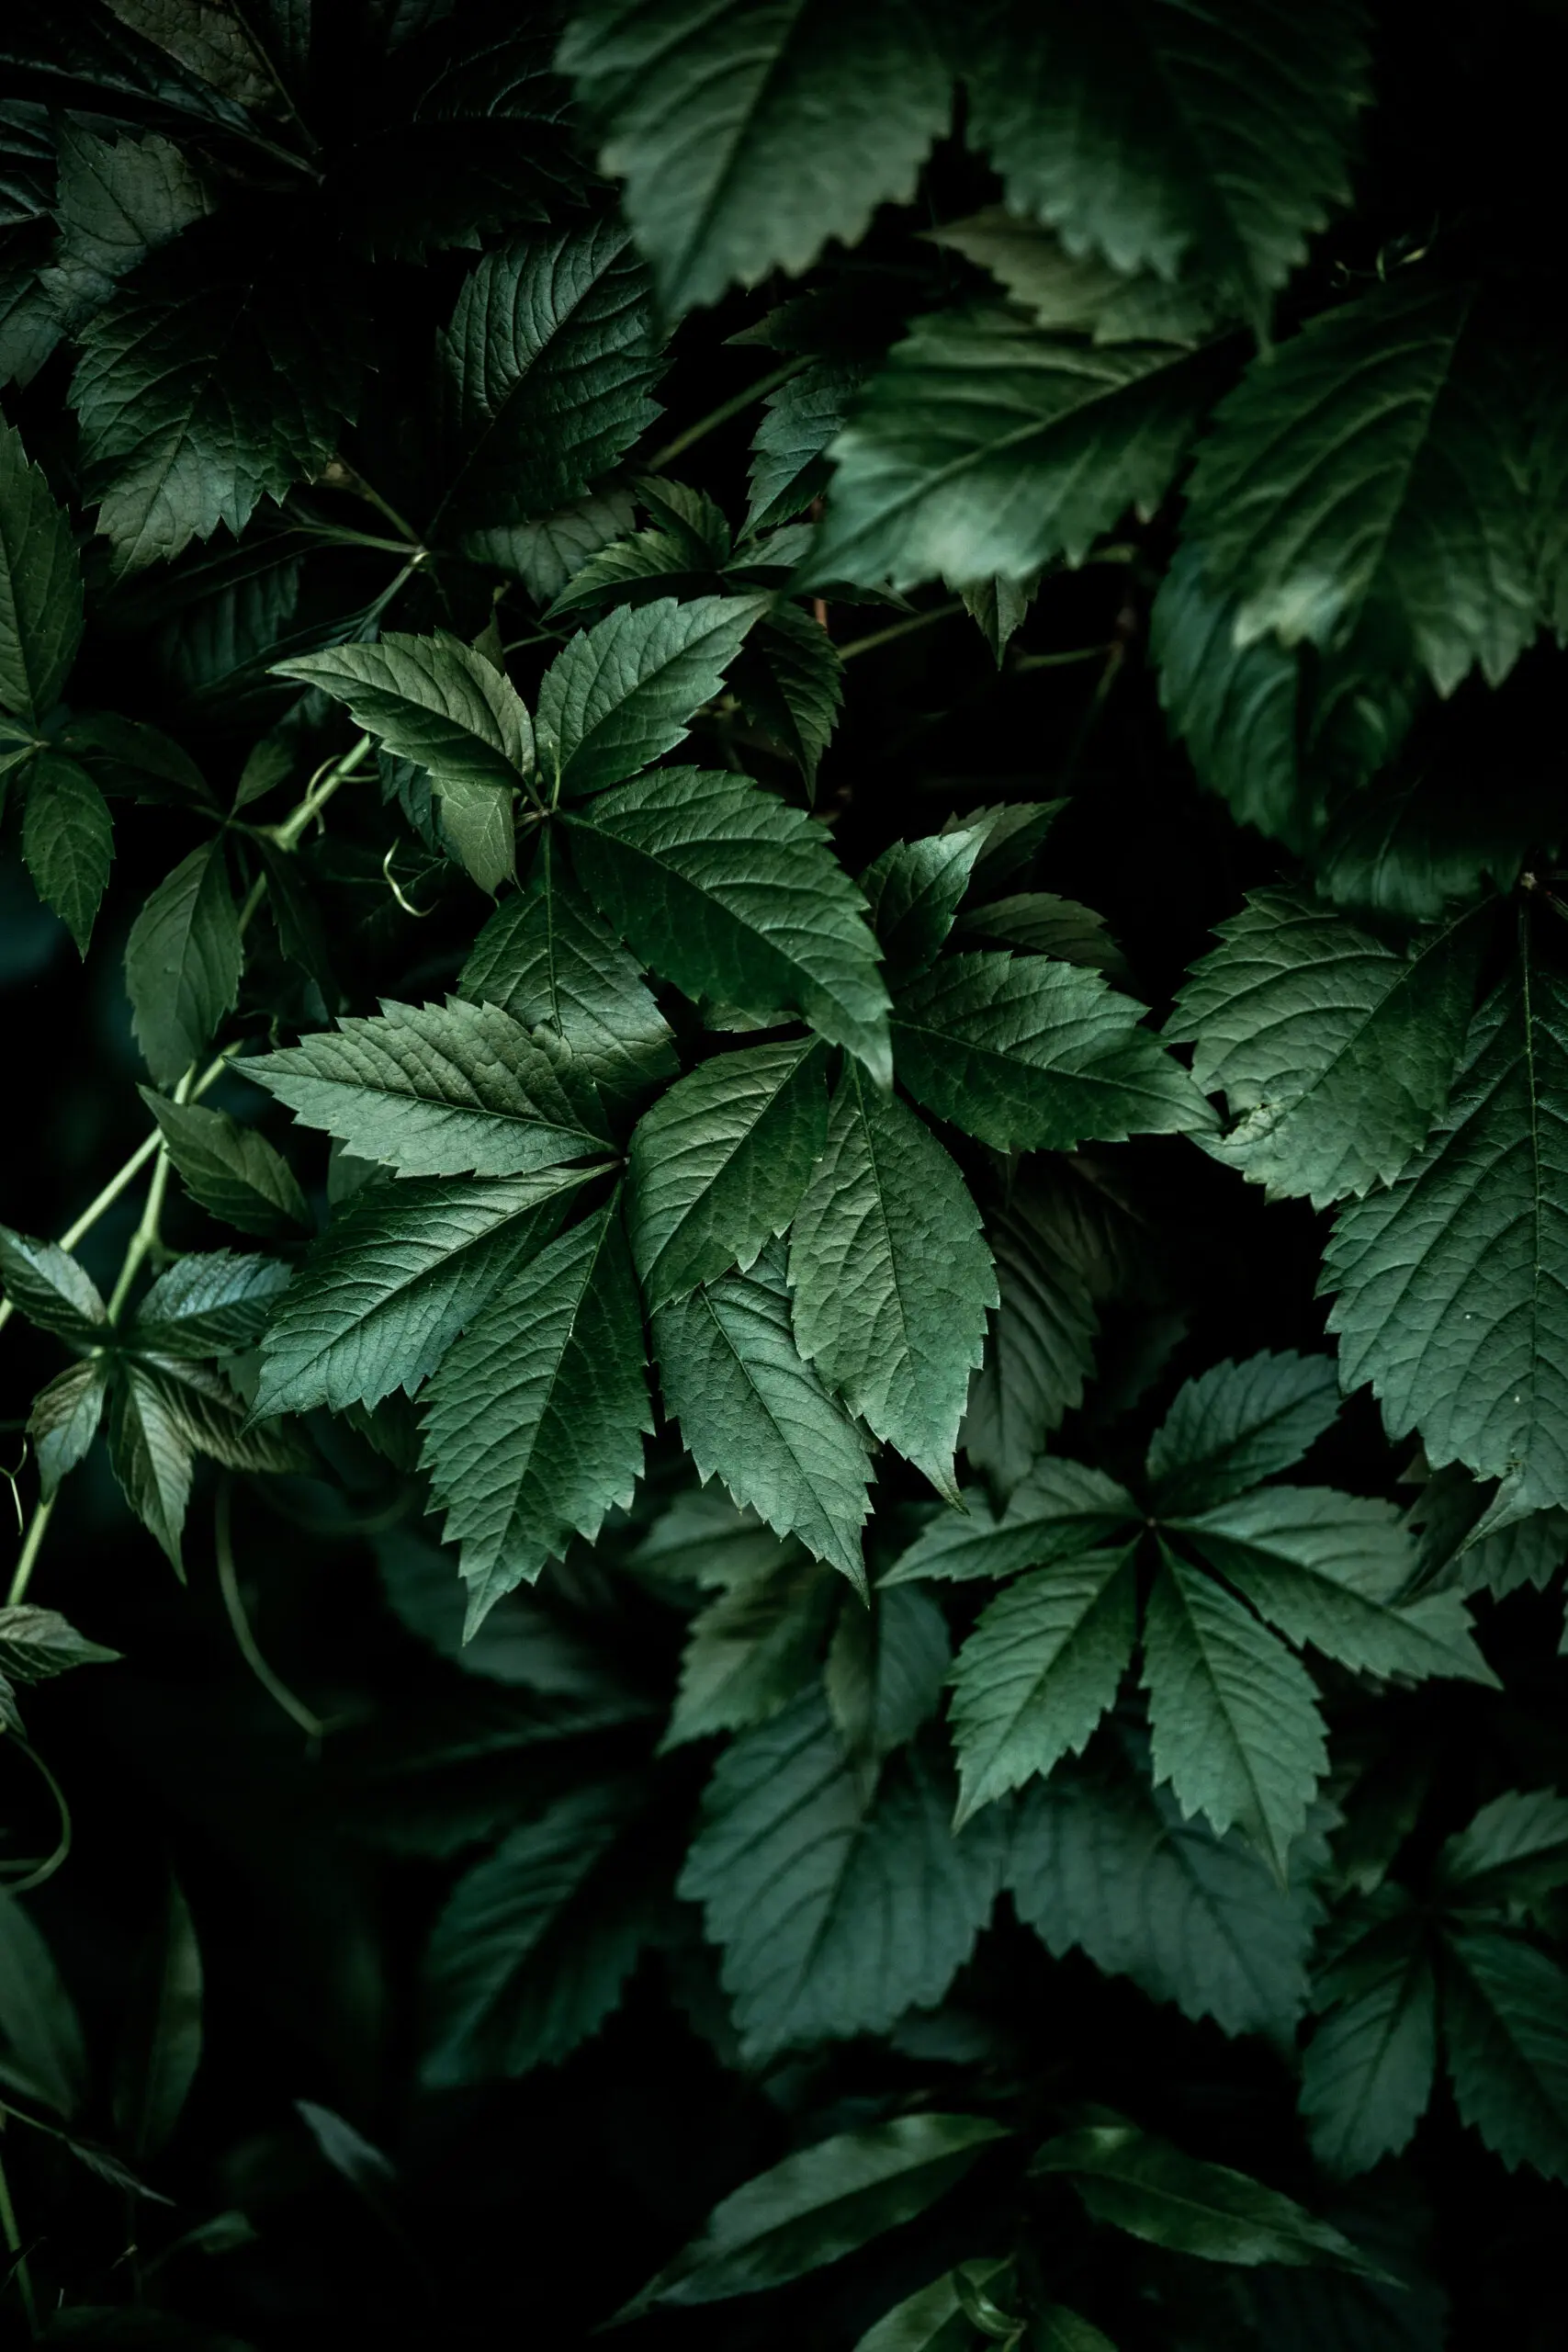 Wandbild (25150) Dark Leaves 13 by Mareike Bohmer präsentiert: Natur